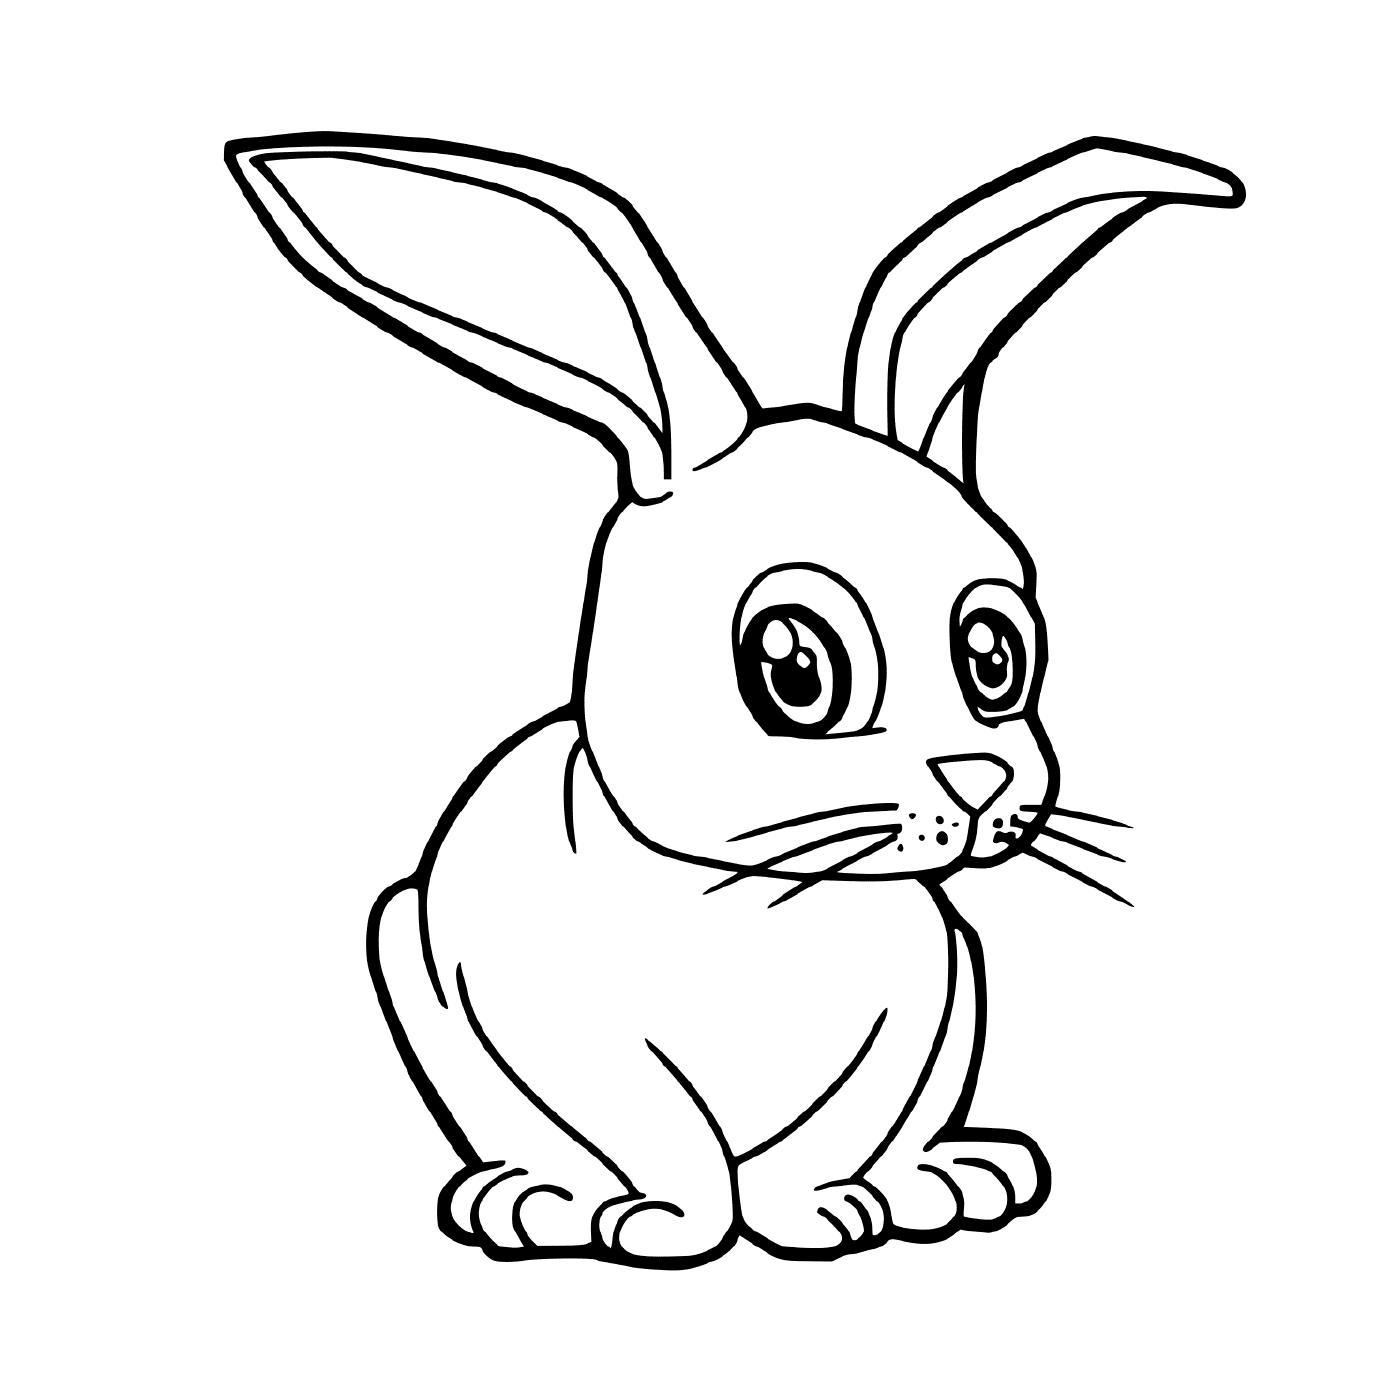  兔子太可爱了 